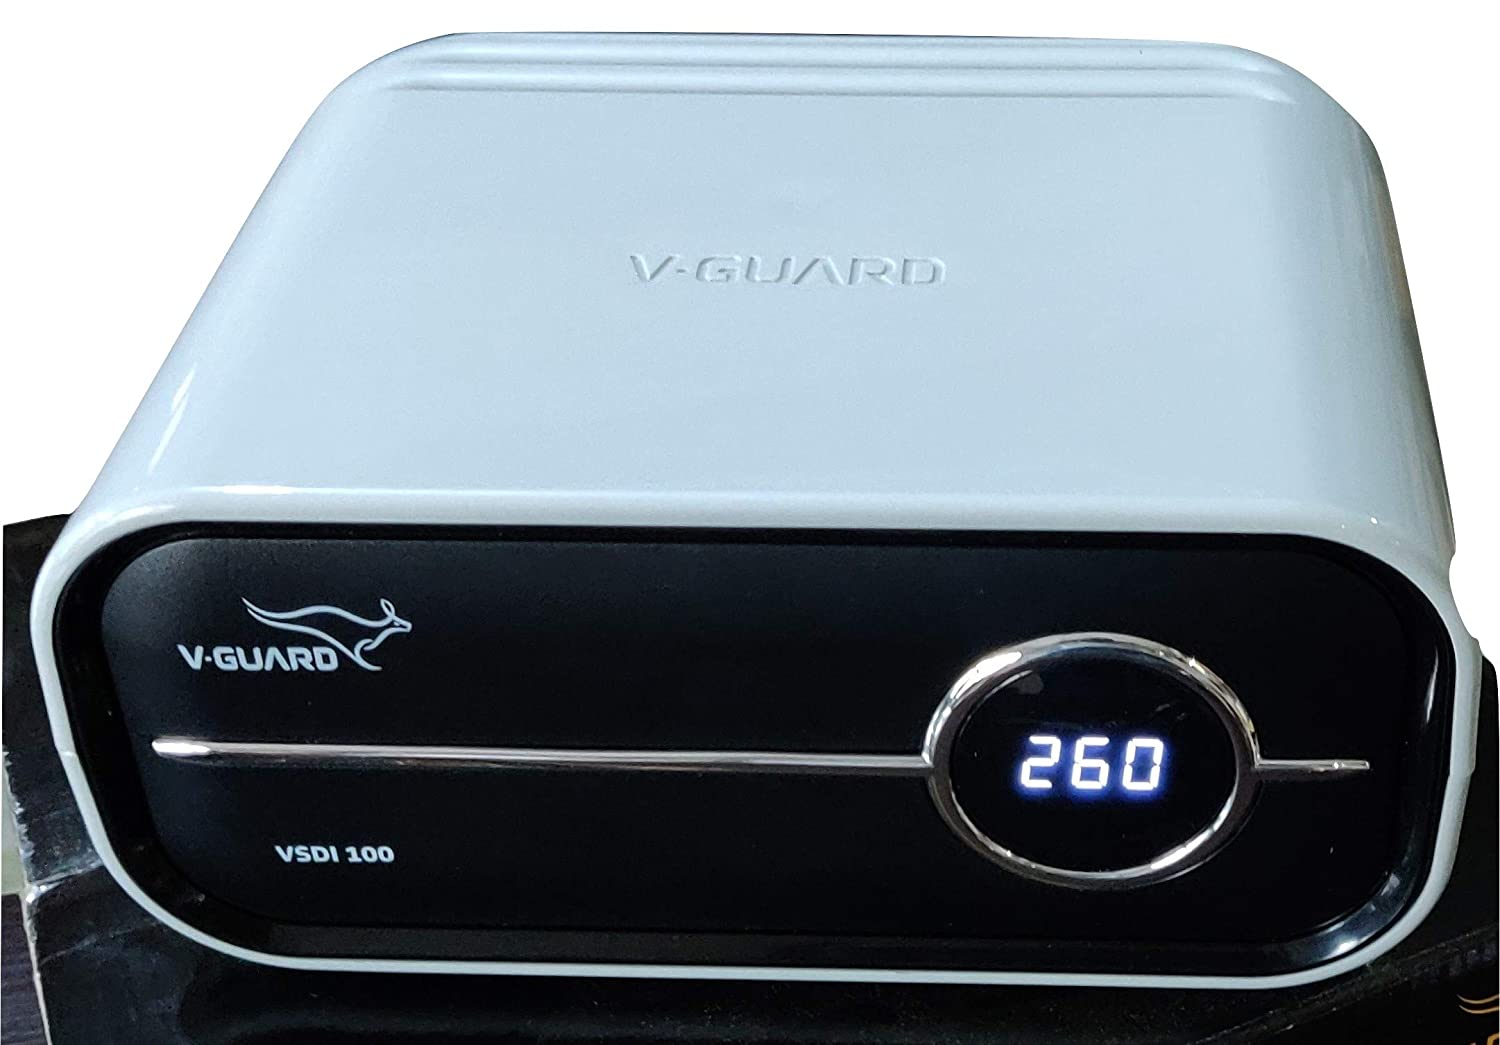 V-Guard V Guard VSDI 100 Digital for Inverter Refrigerator up to 900 L/Deep Freezer up to 4 Ampere, Grey for Working Range(Input) : 120 VAC -280 VAC